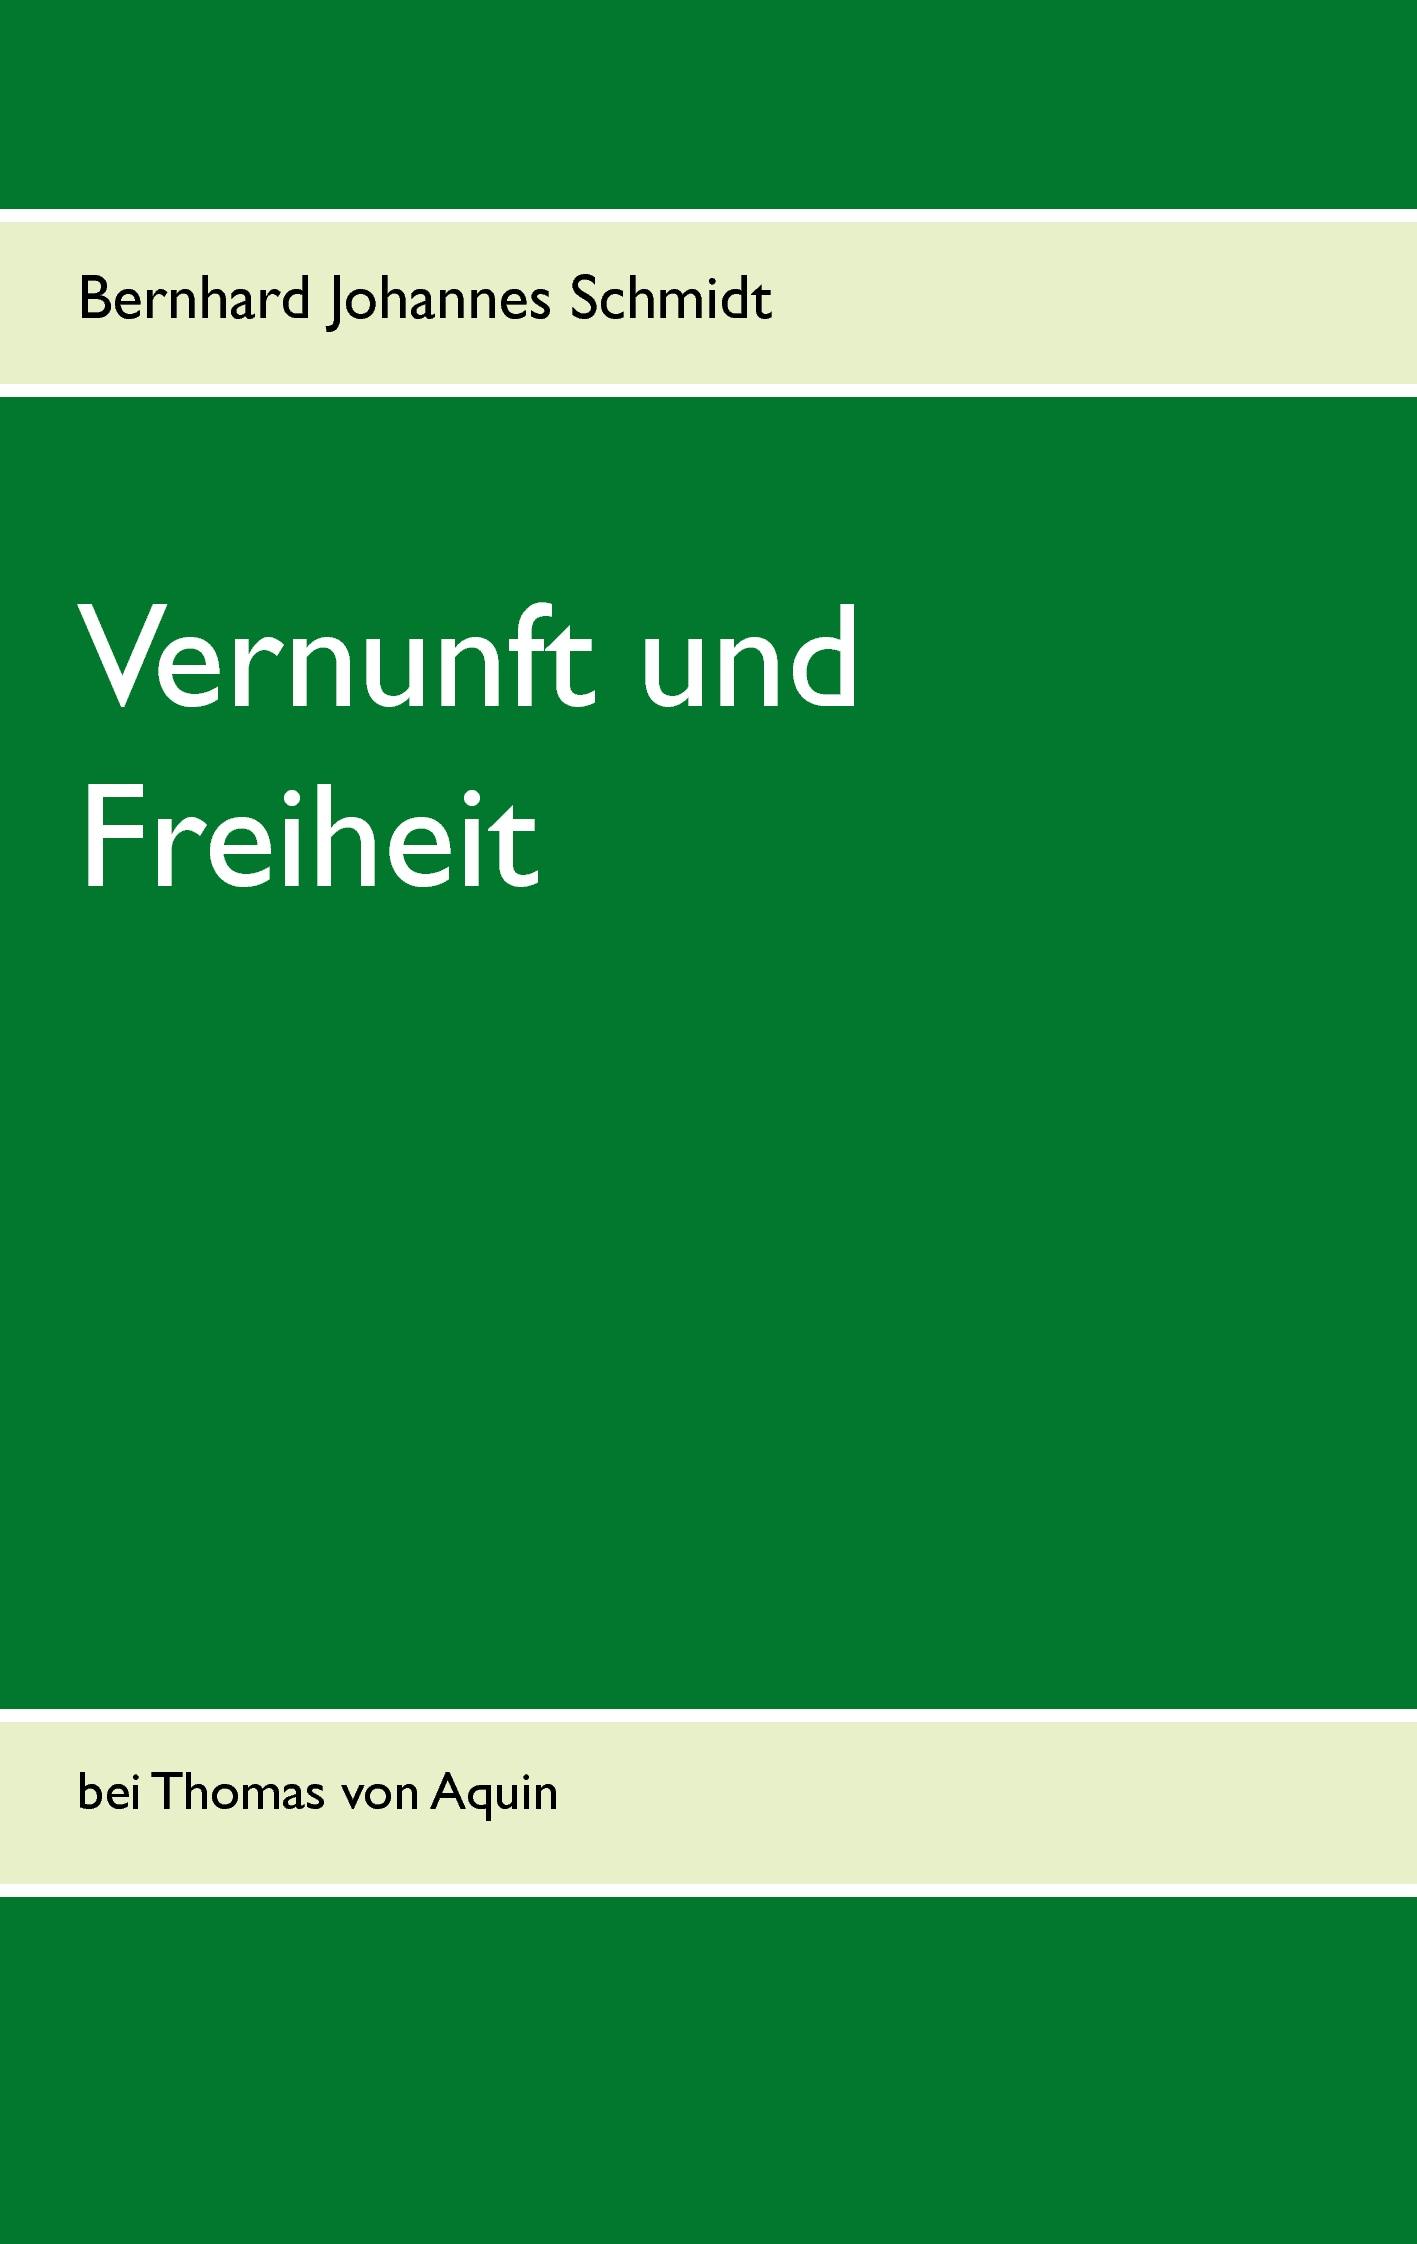 Vernunft und Freiheit - Bernhard Johannes Schmidt